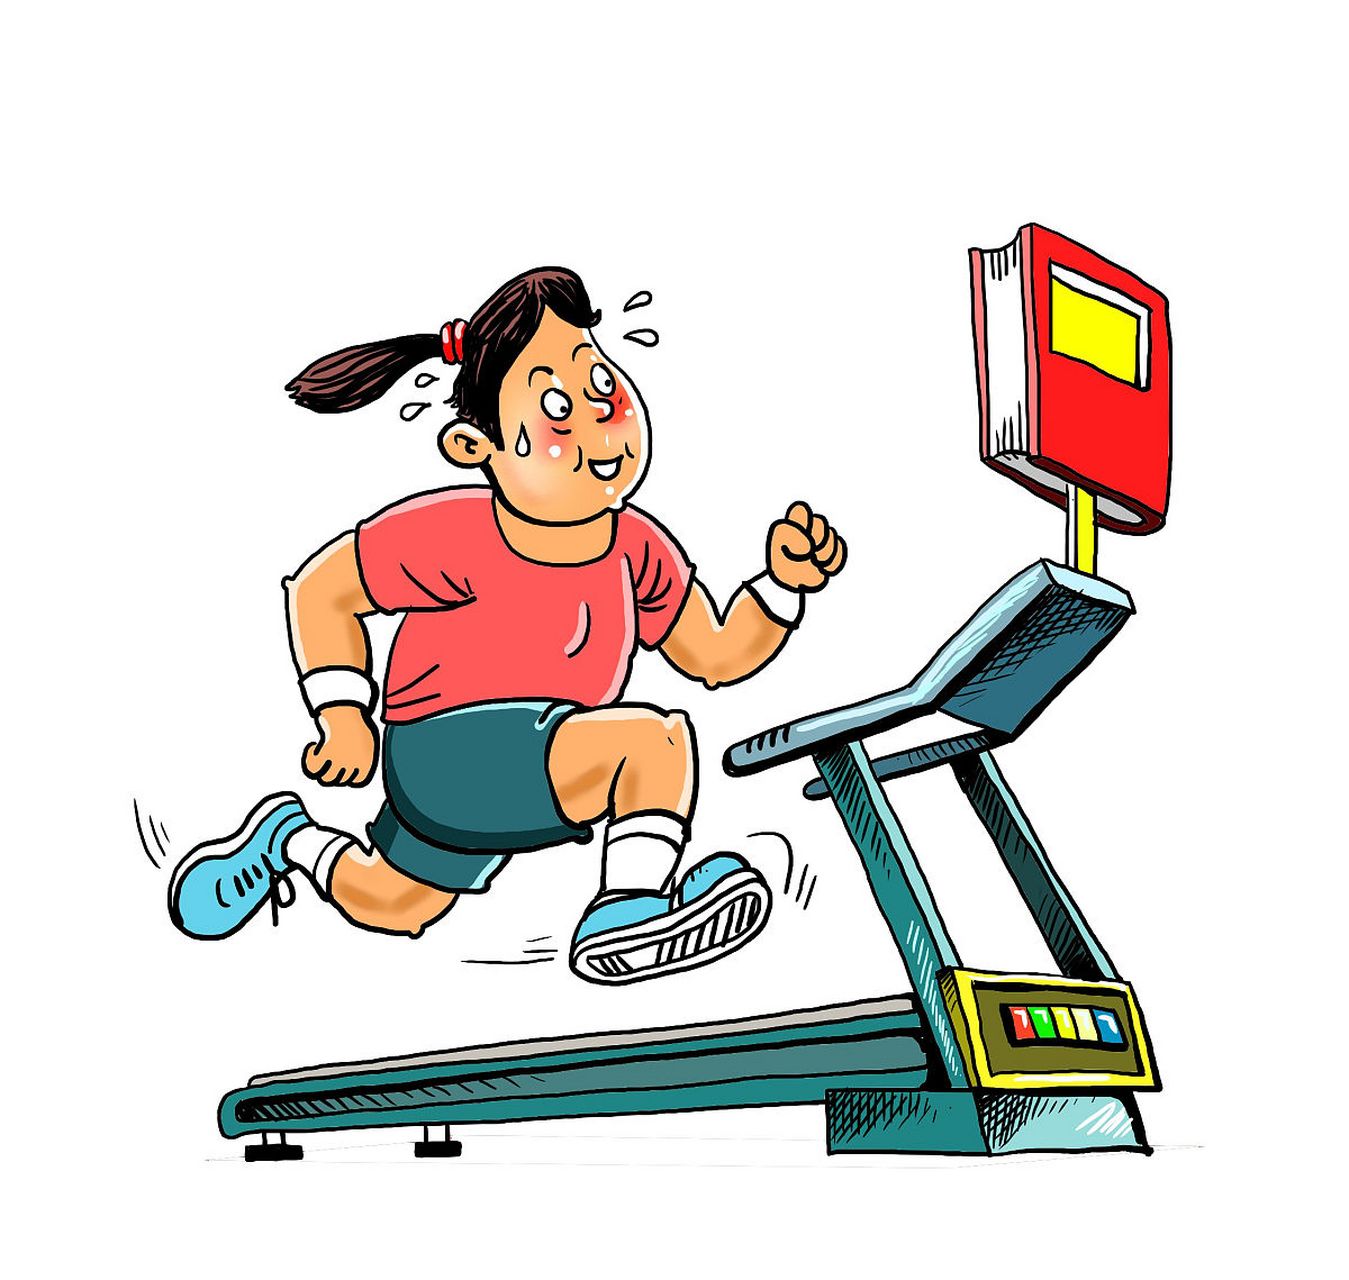 运动虽好,但过量则有害无益  尽管运动被广泛认为是强身健体的最佳